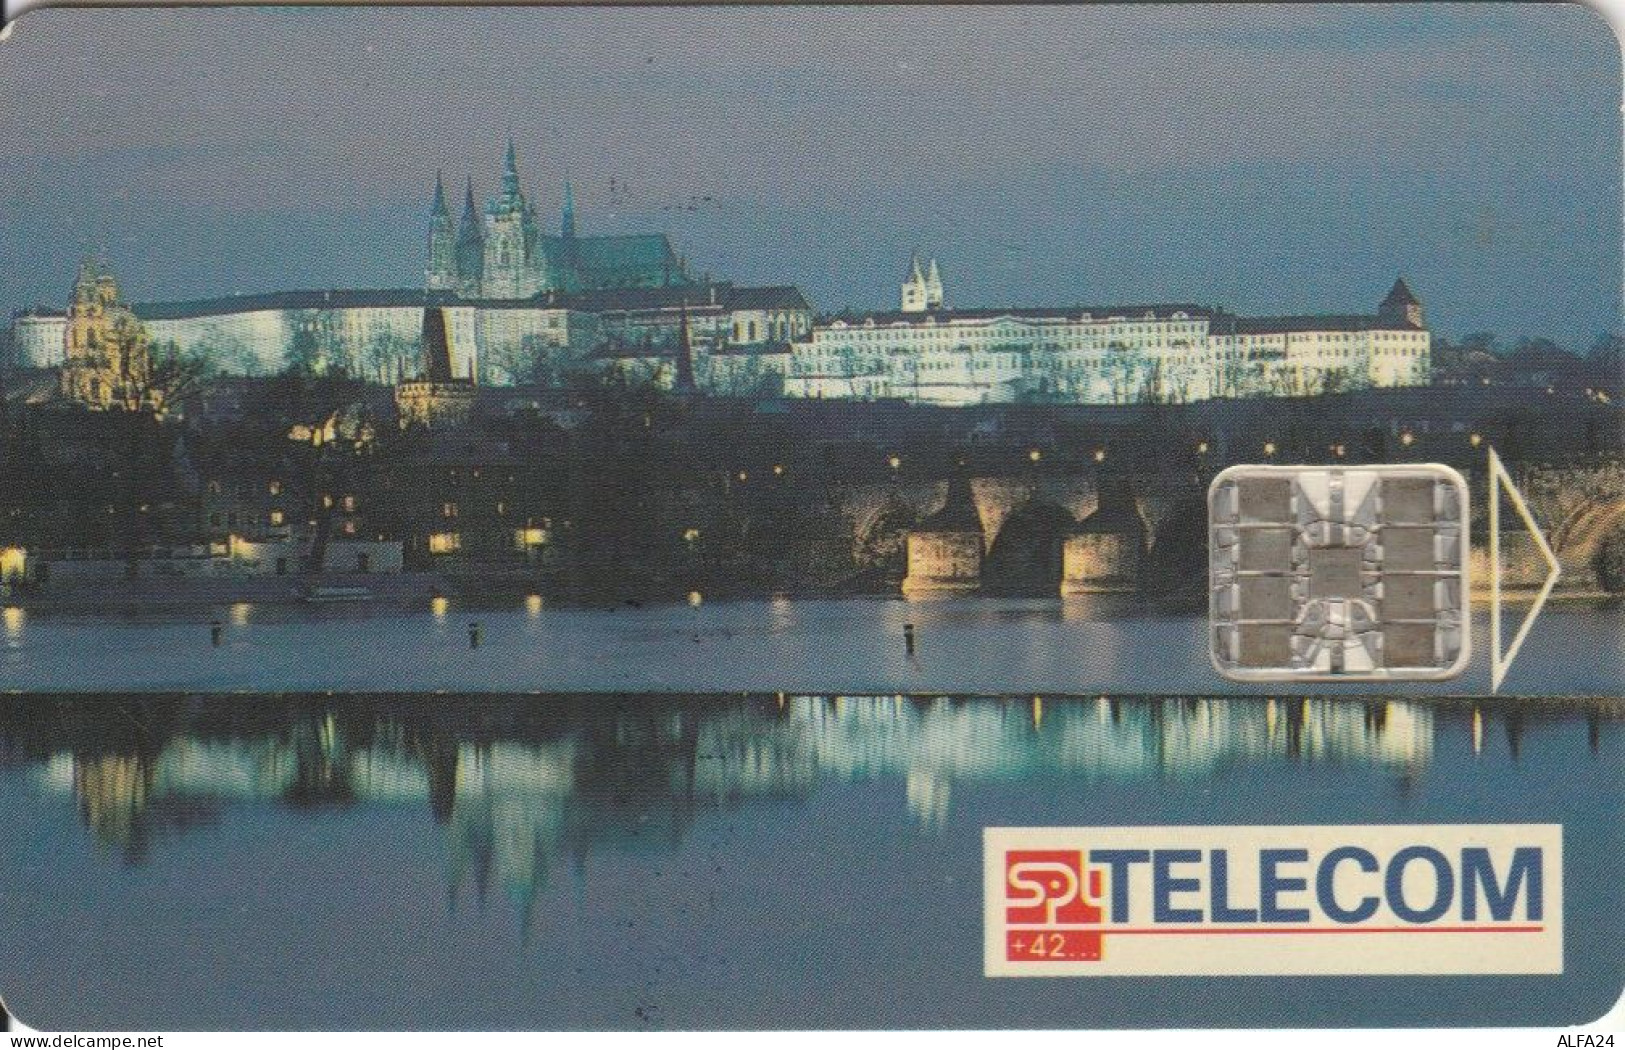 PHONE CARD REPUBBLICA CECA (J.41.1 - Czech Republic